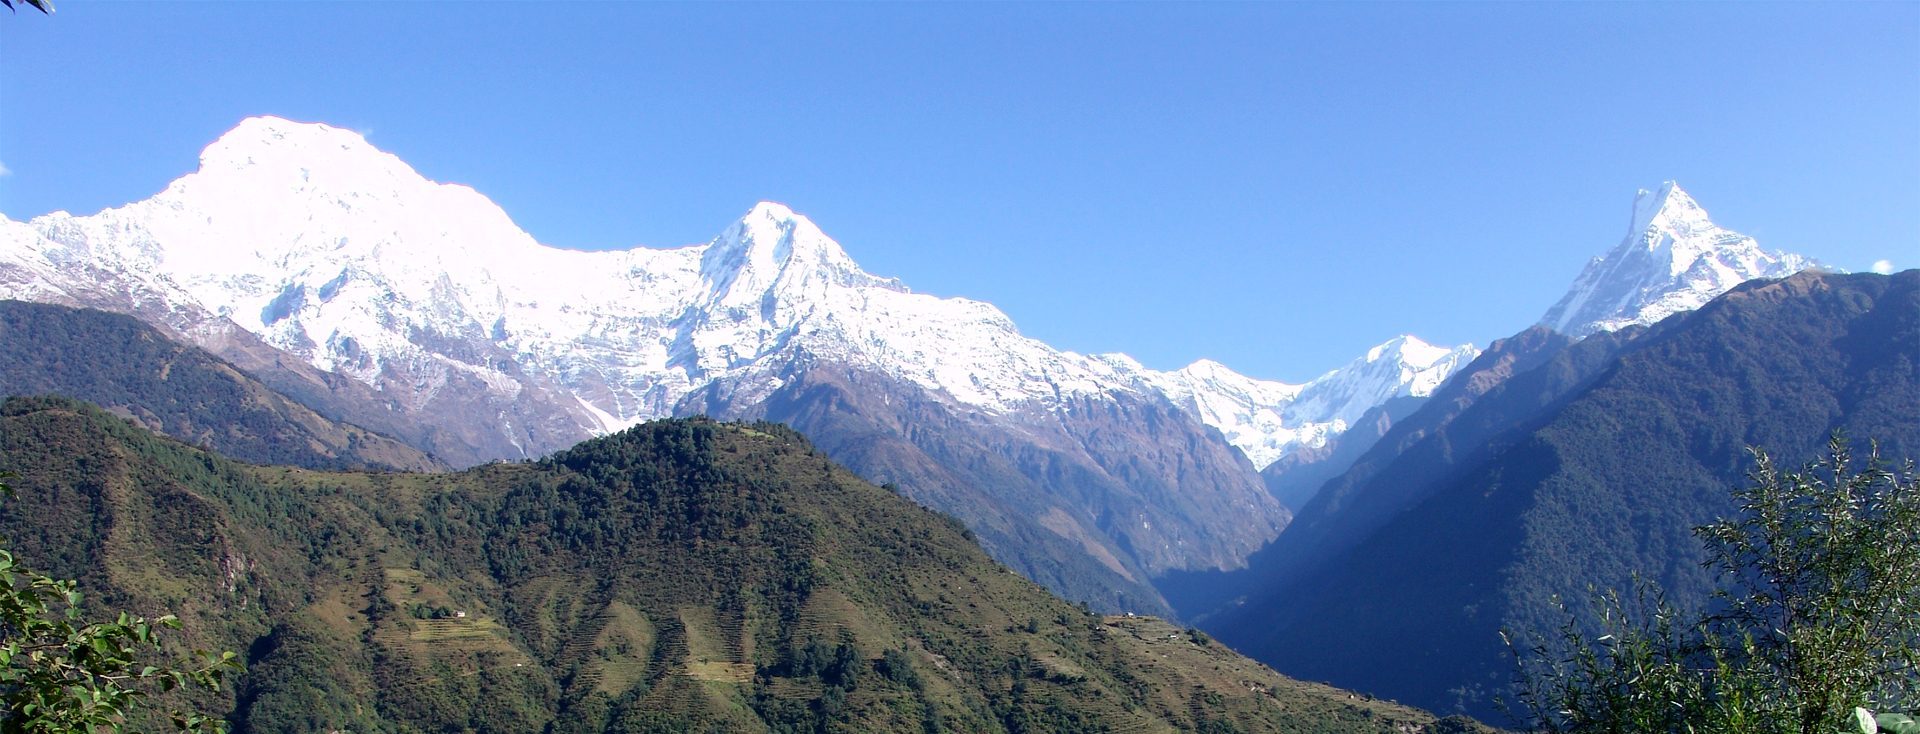 Campamento base de Annapurna